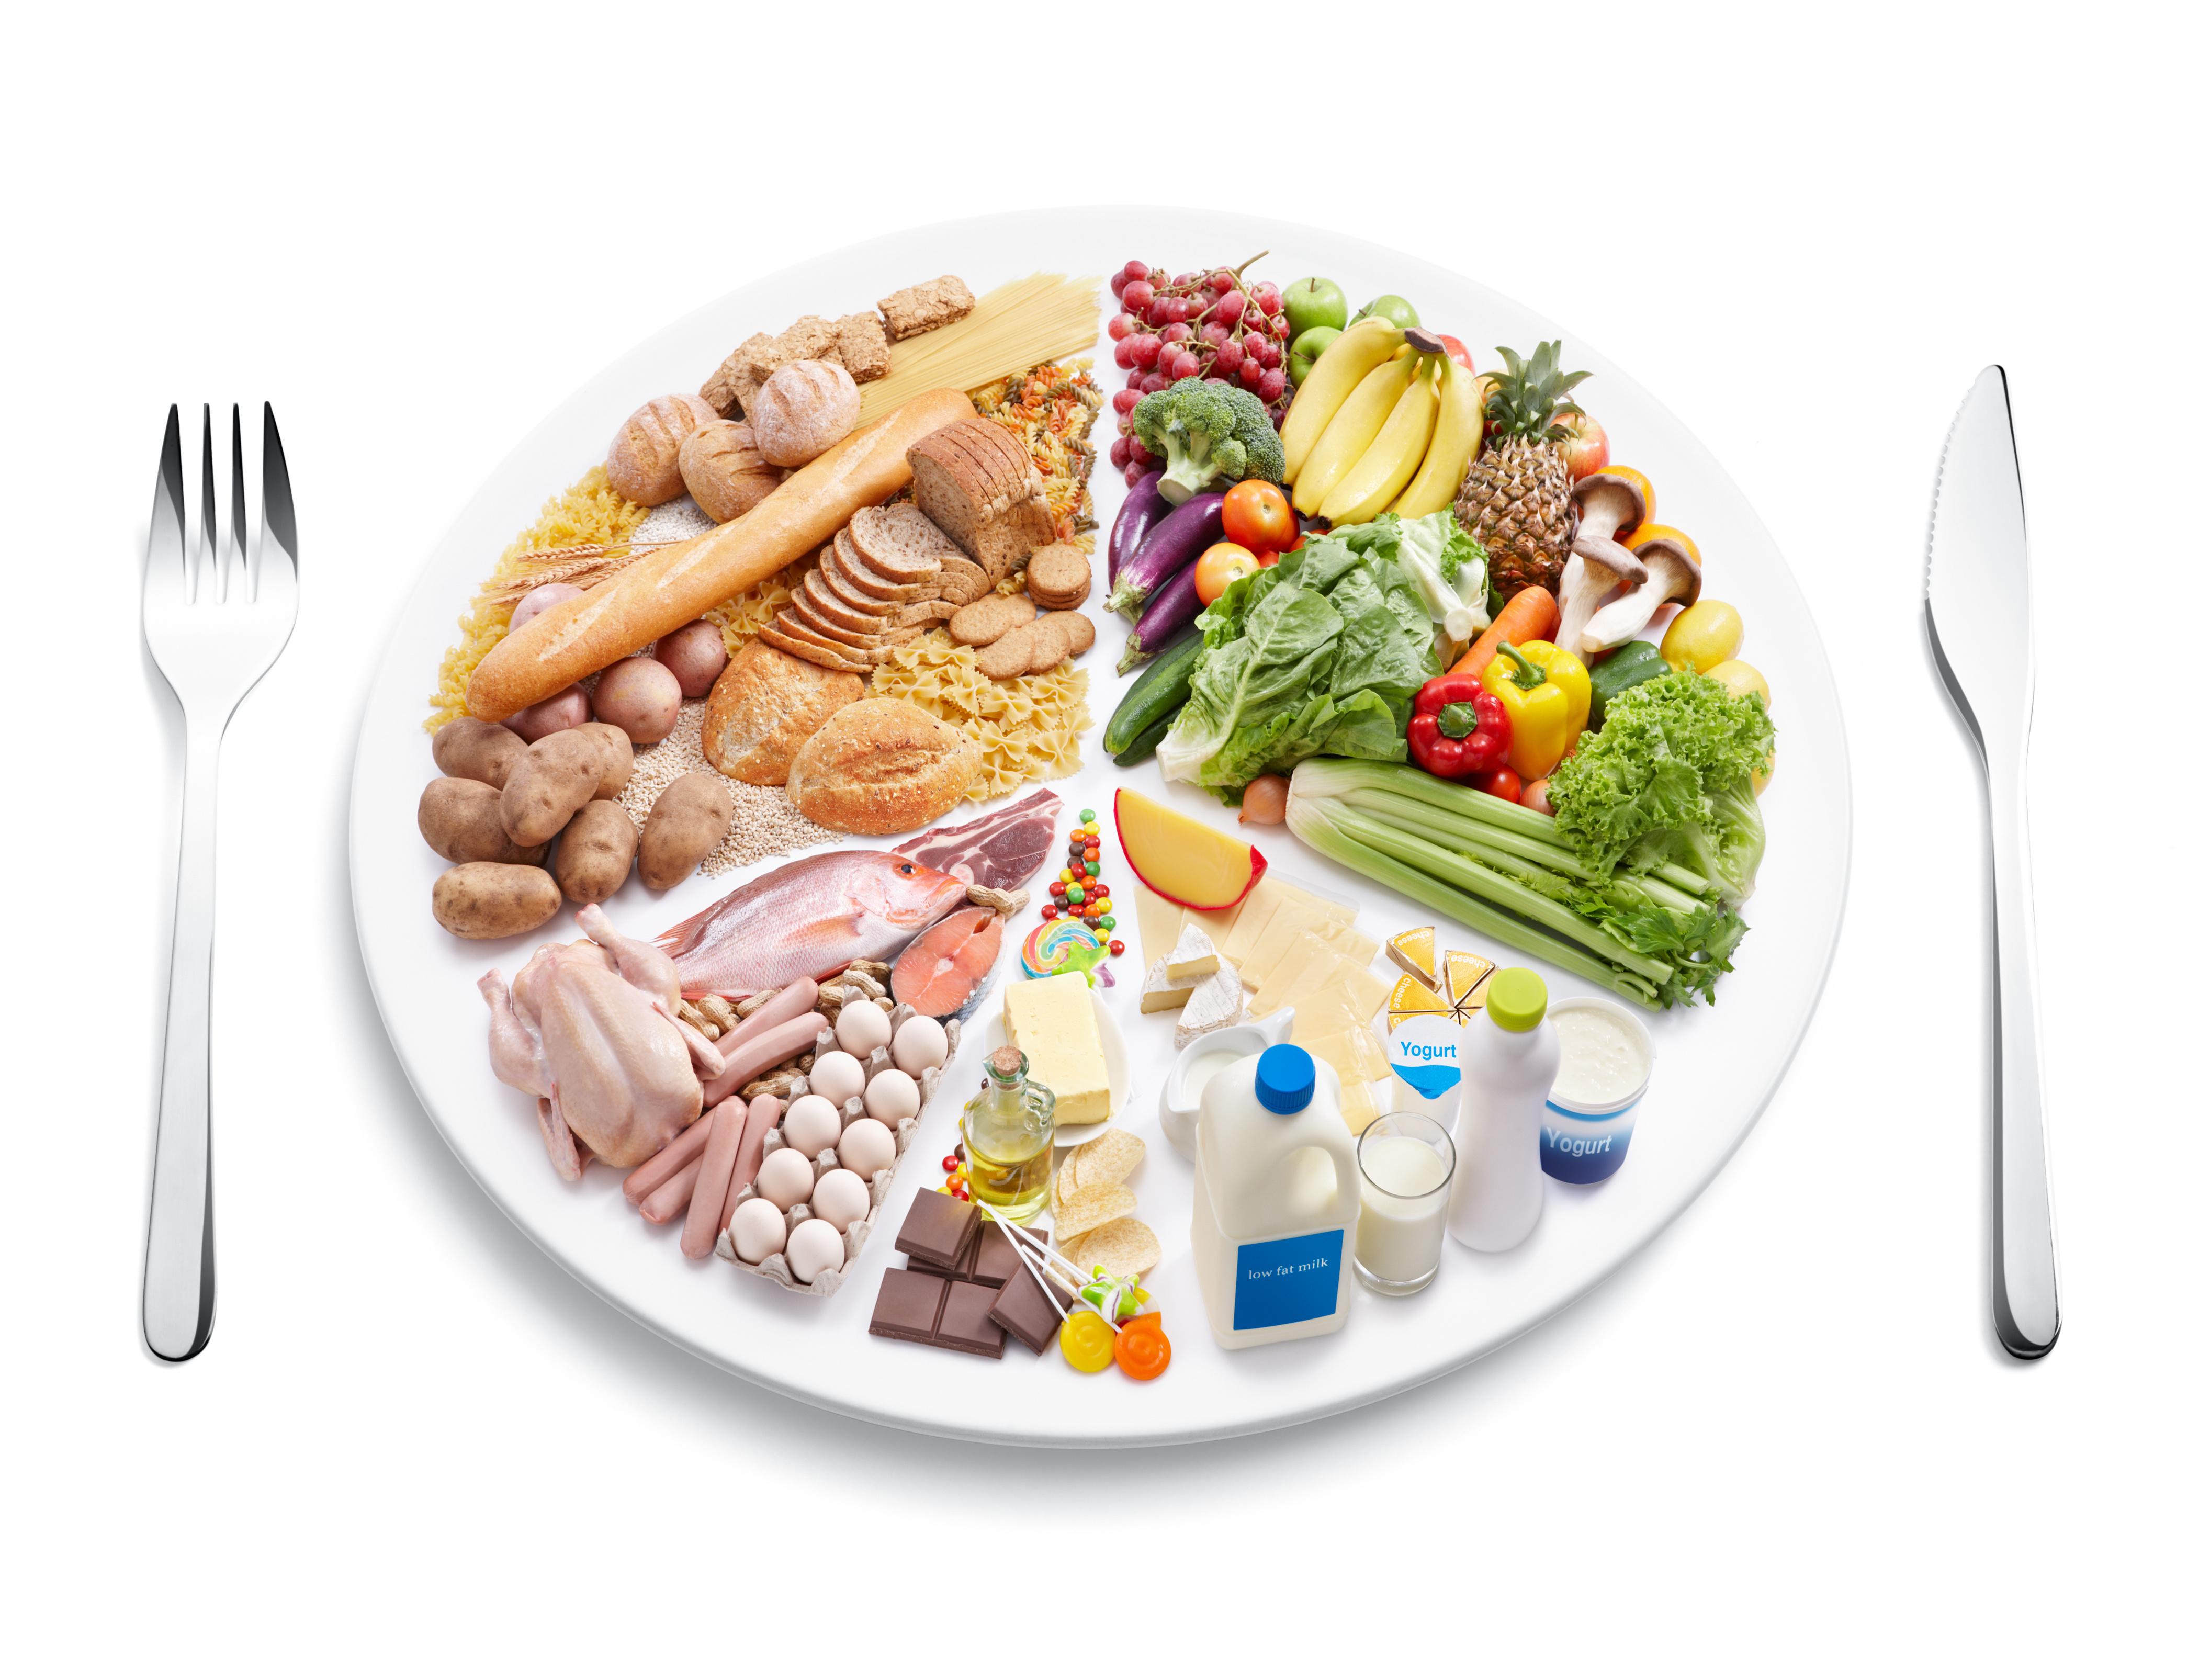 gluténmentes étrend hashimoto regenor étrend mit nem szabad enni